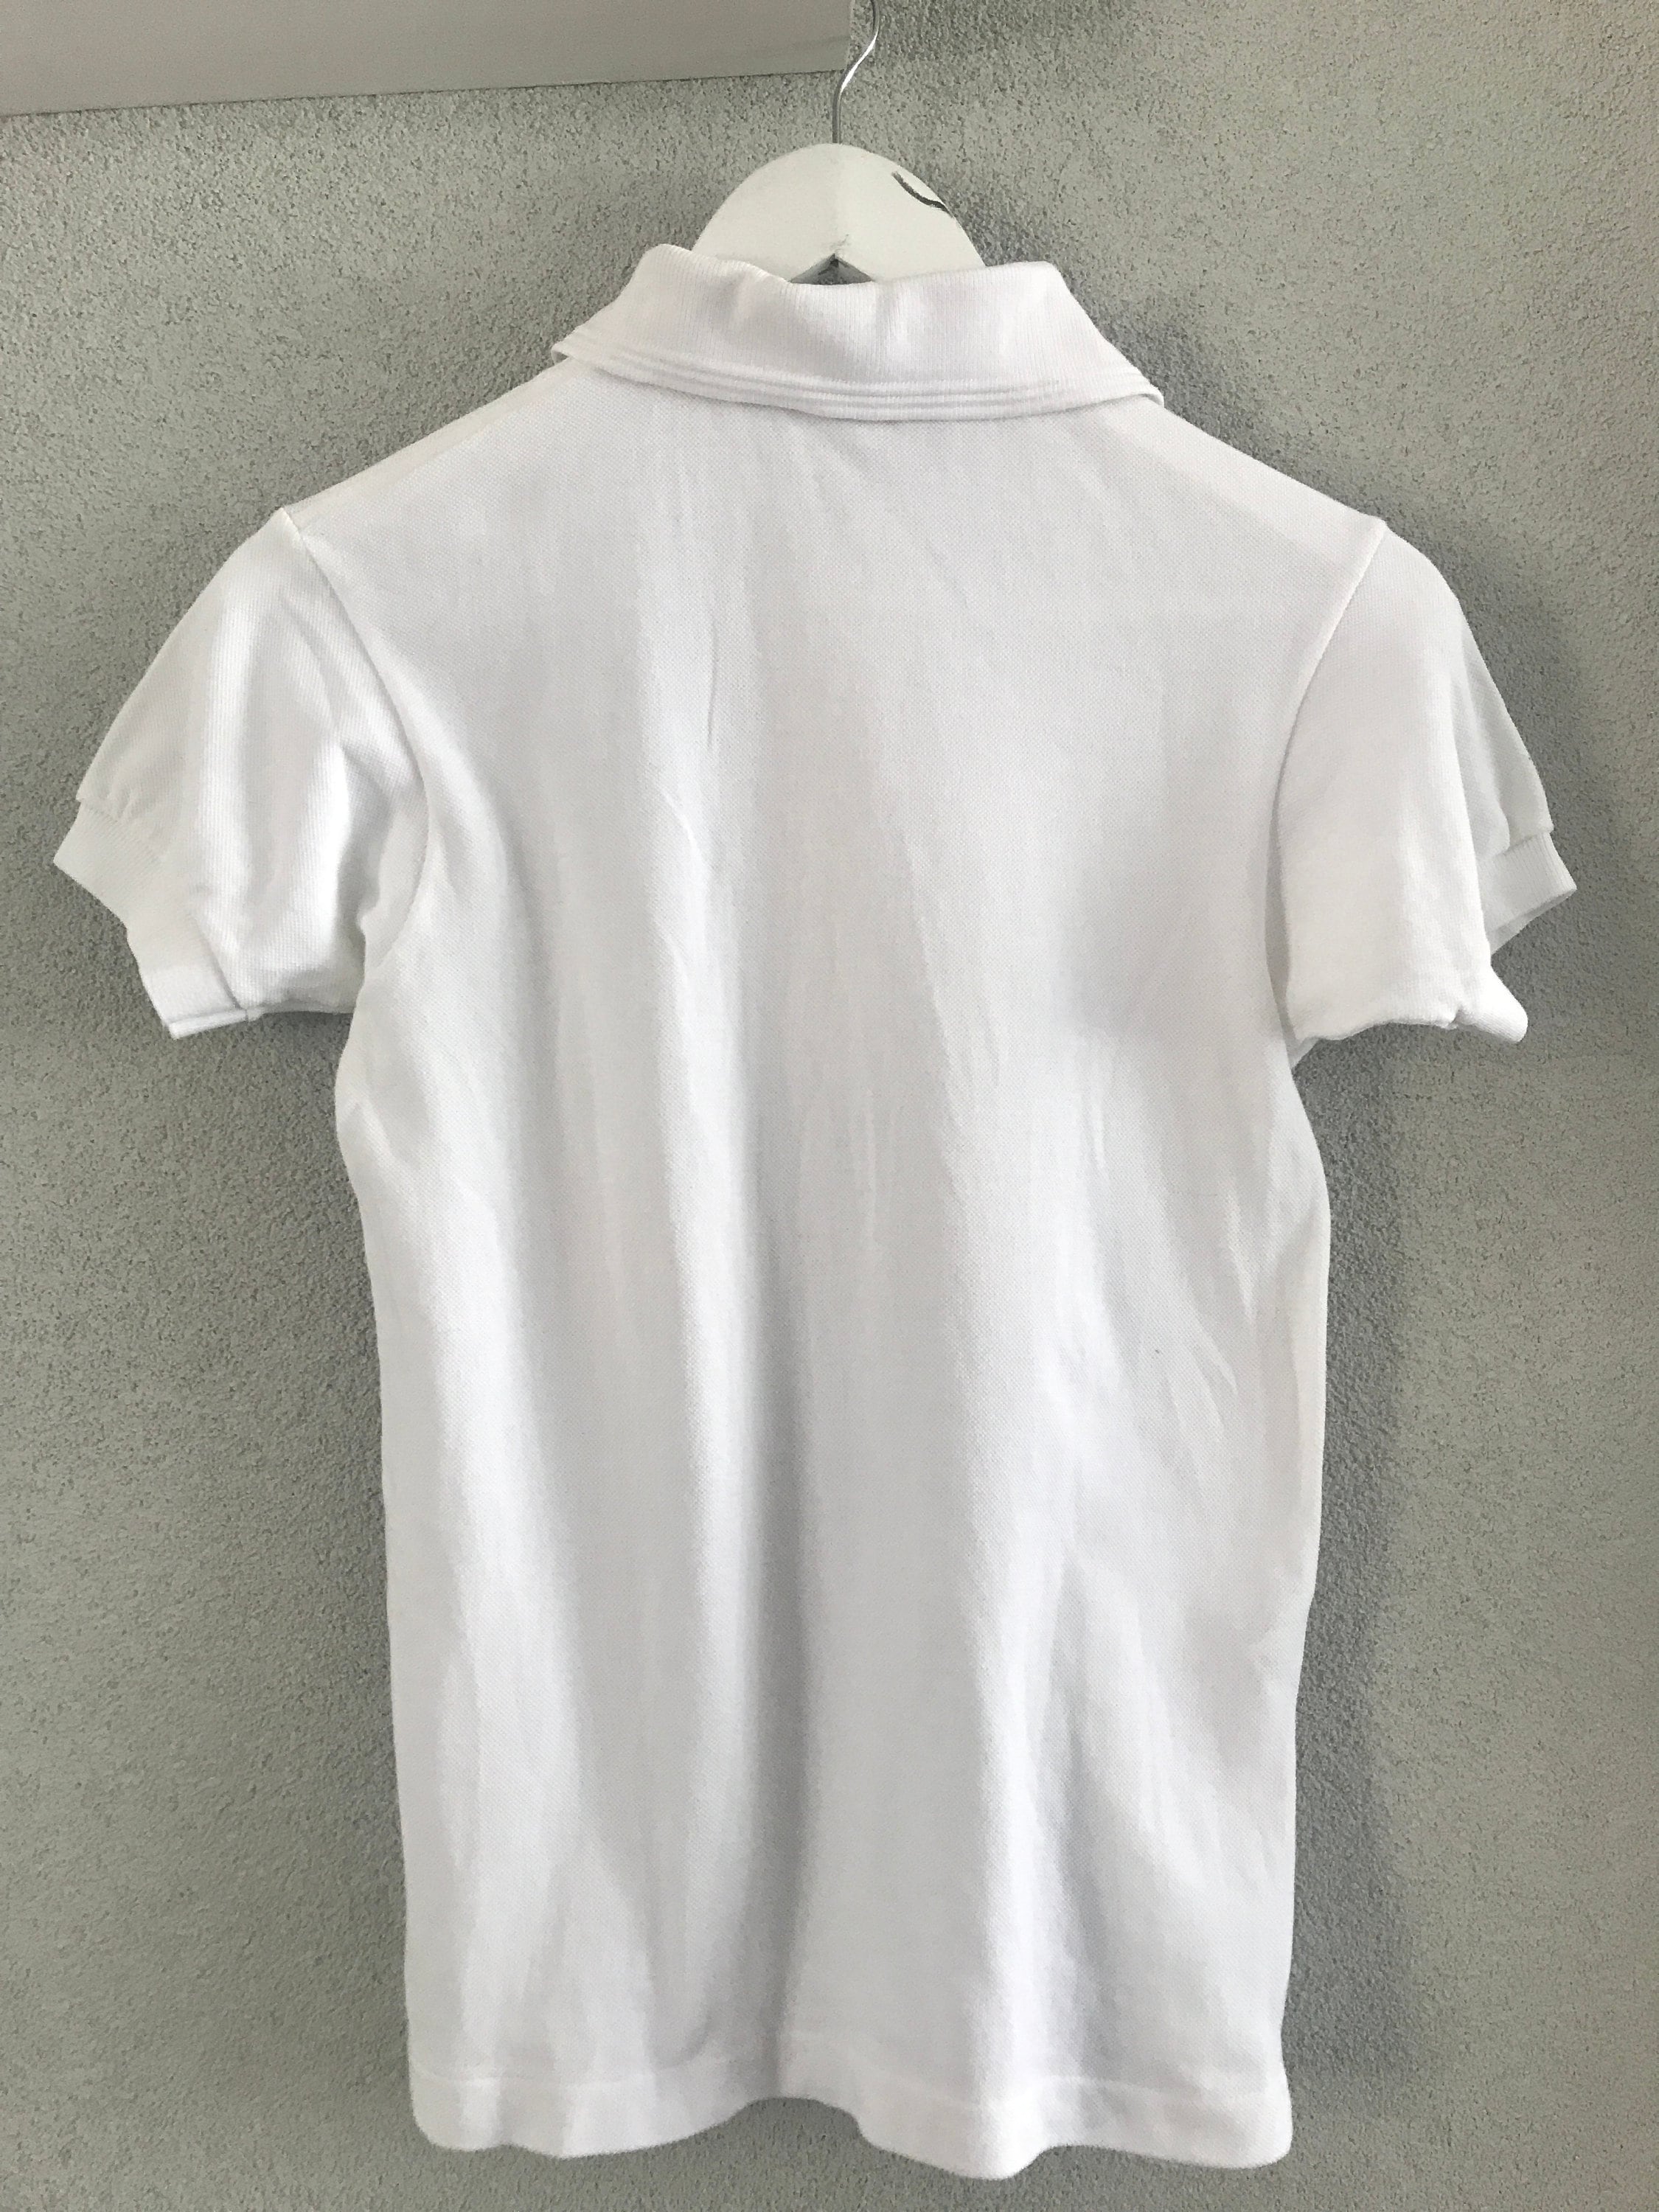 Vintage Chemise Lacoste polo shirt | White polo shirt | vintage white ...